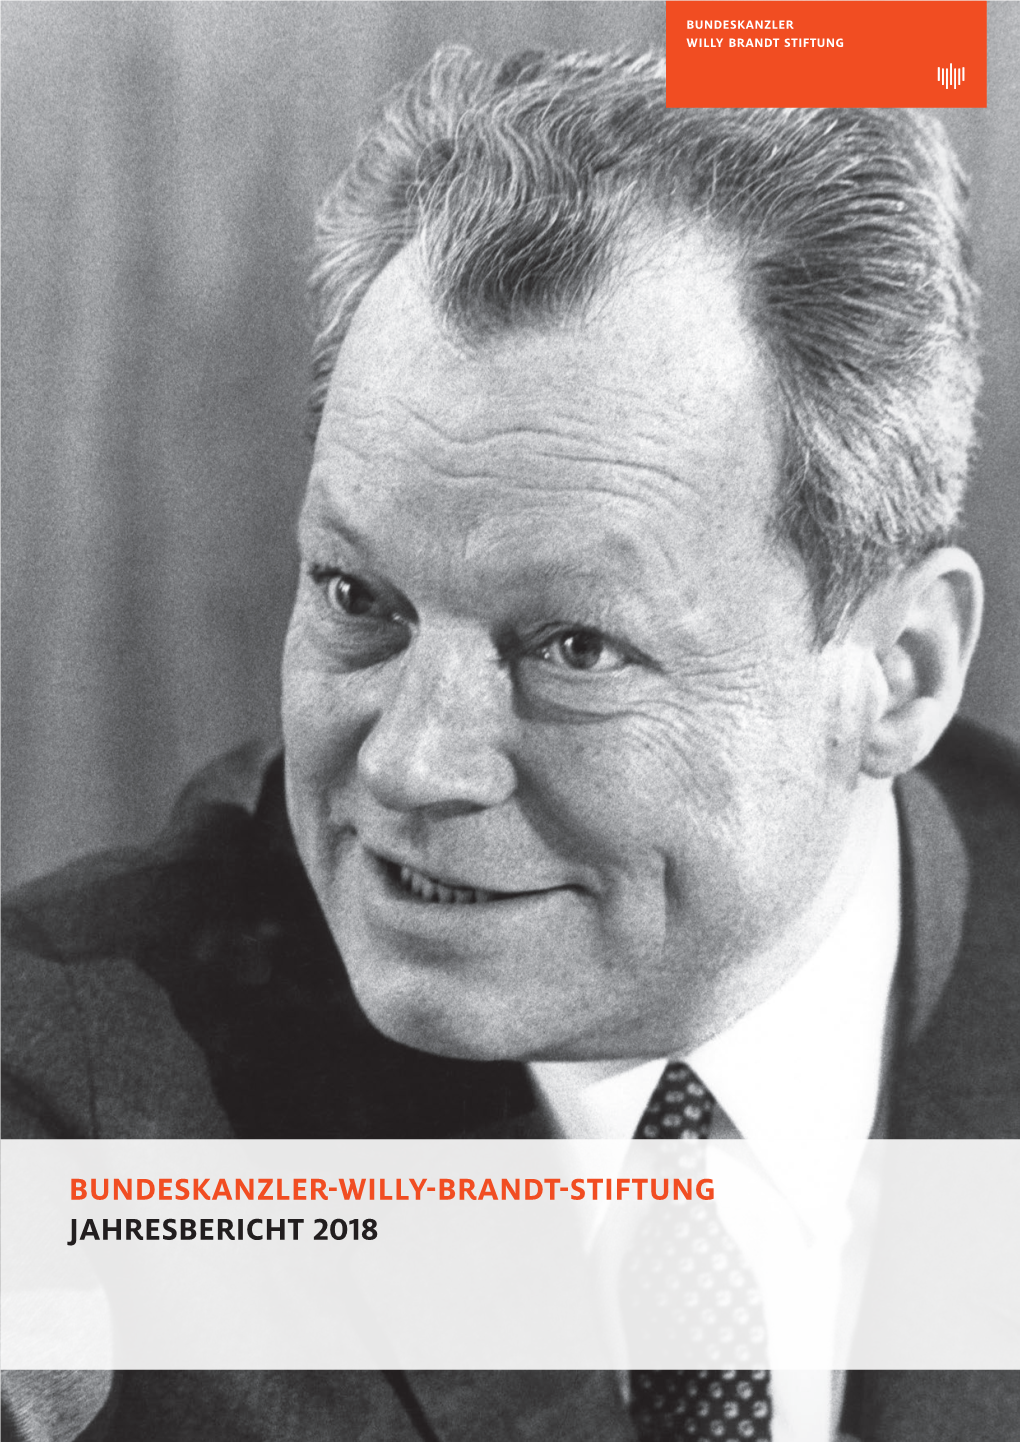 Bundeskanzler-Willy-Brandt-Stiftung Jahresbericht 2018 Inhalt